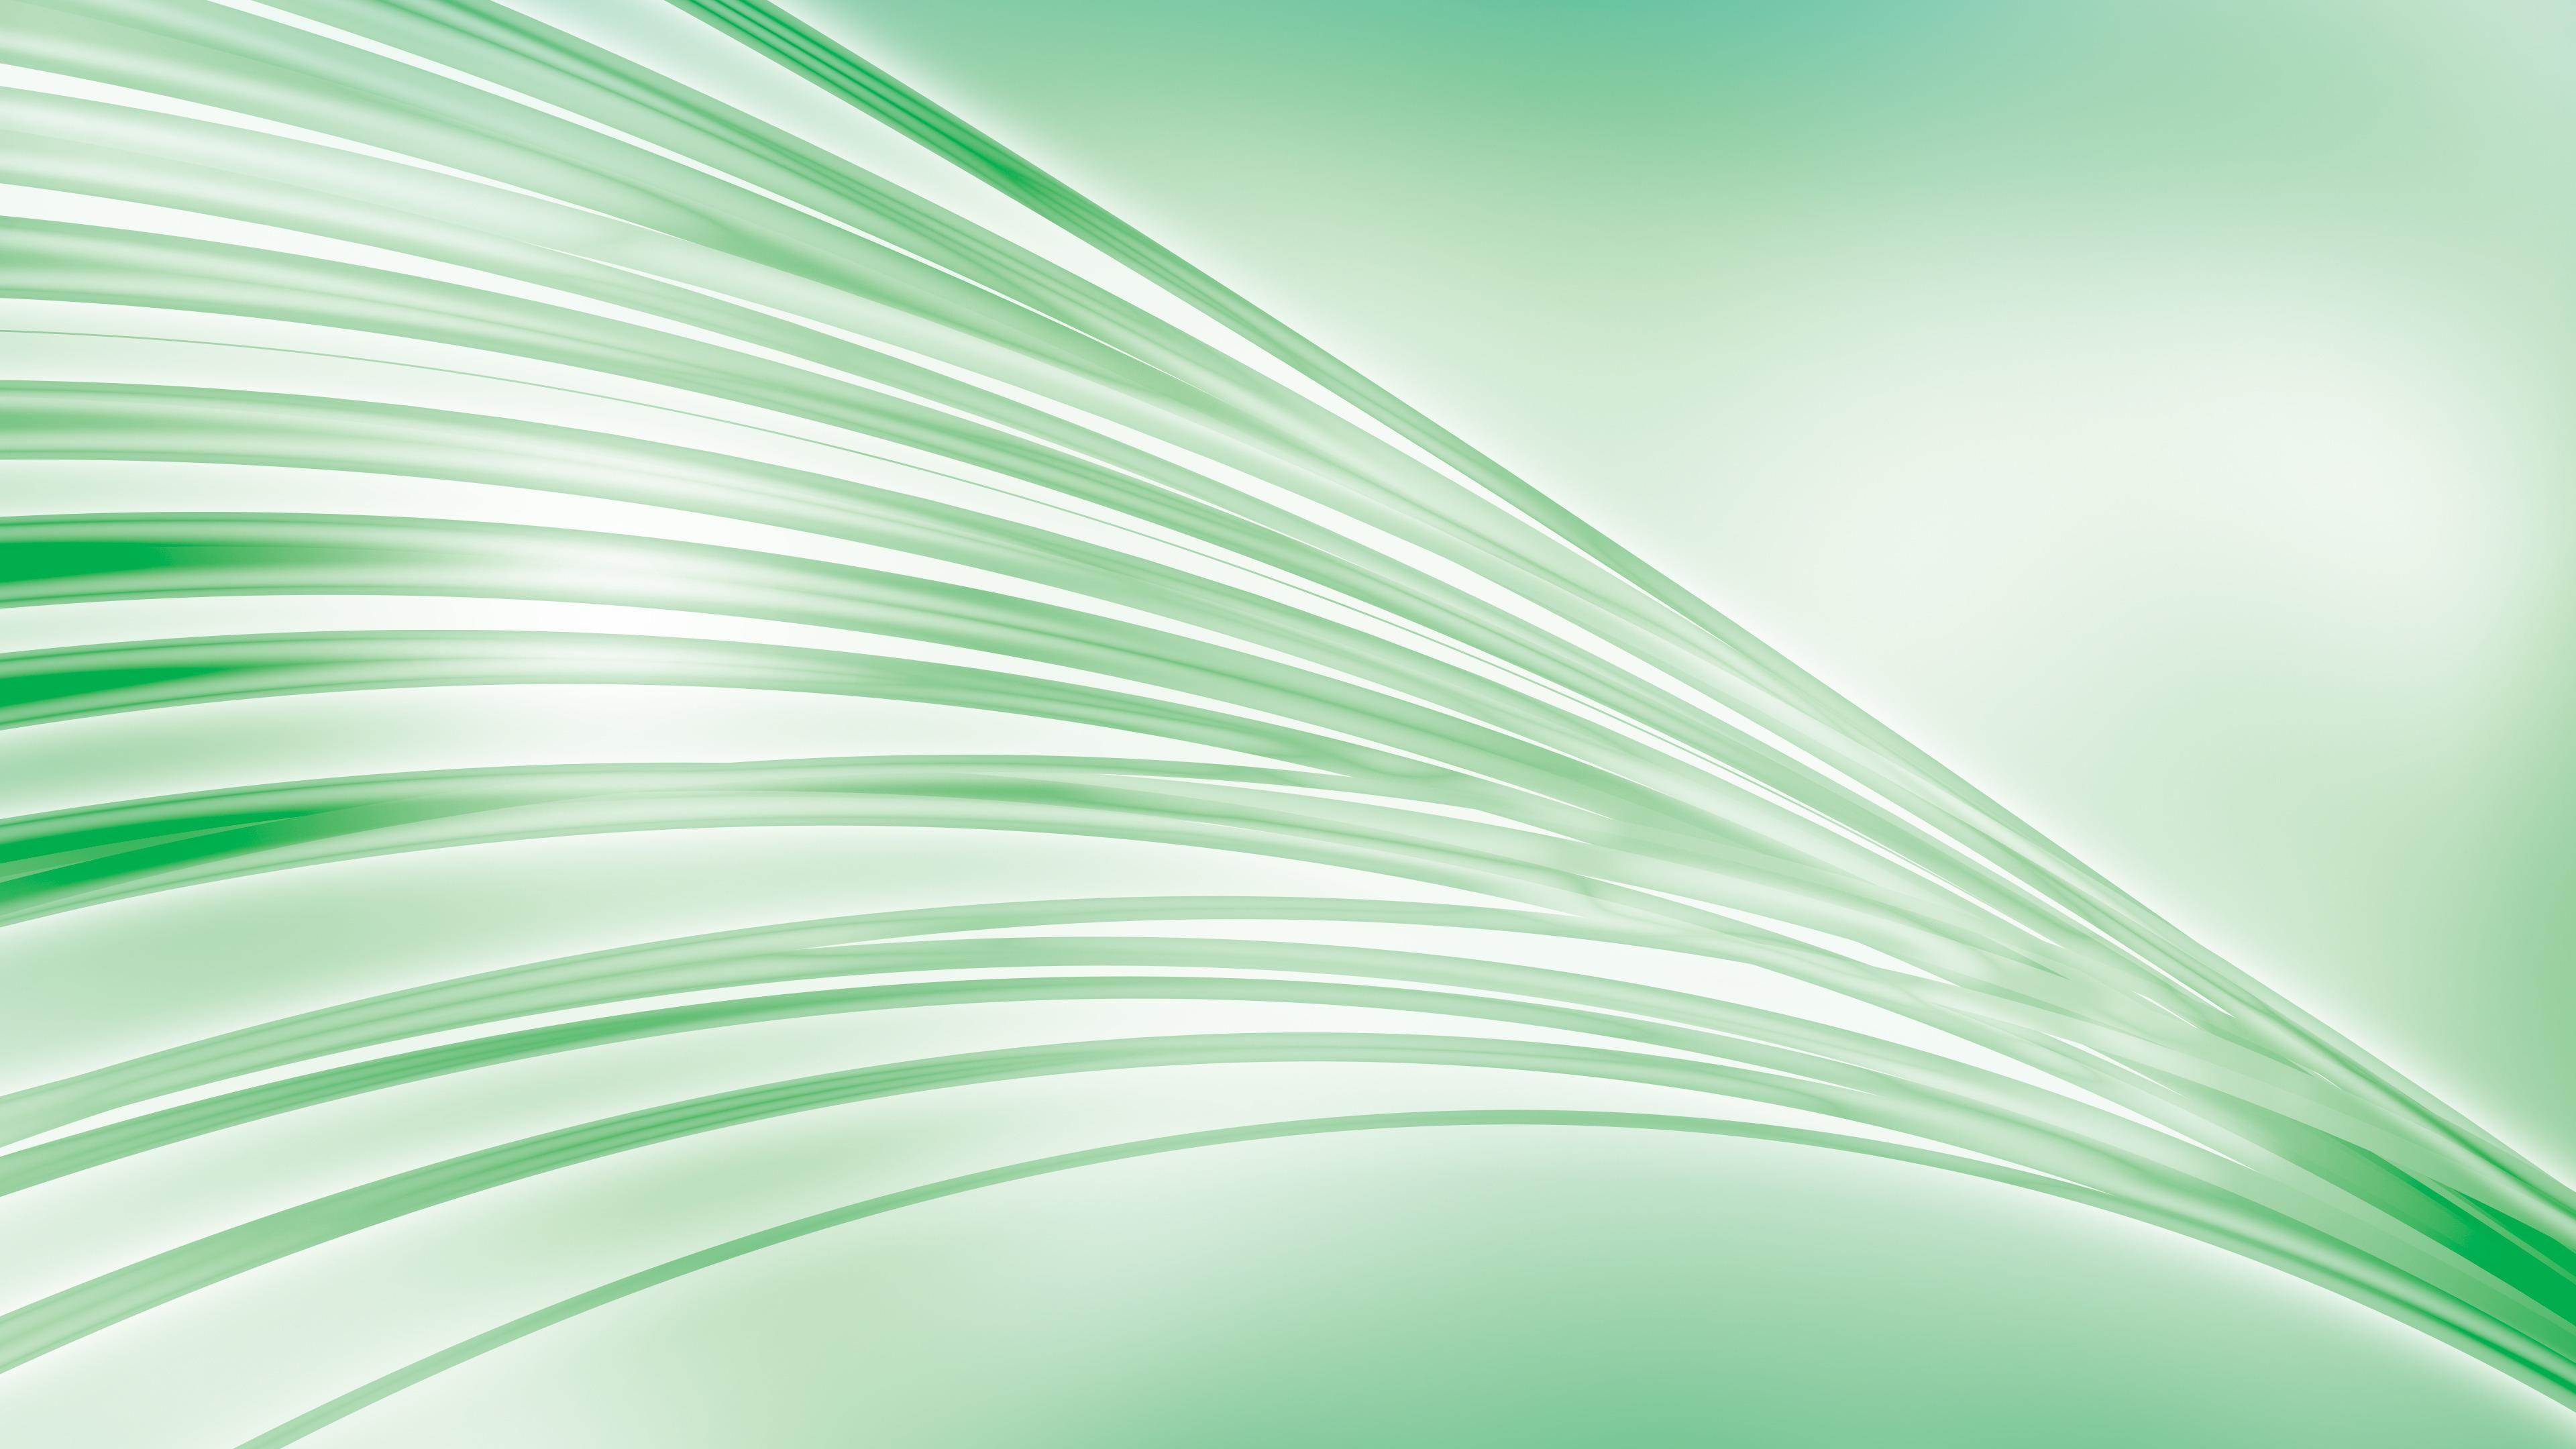 Green curves HD desktop wallpaper, Widescreen, High Definition